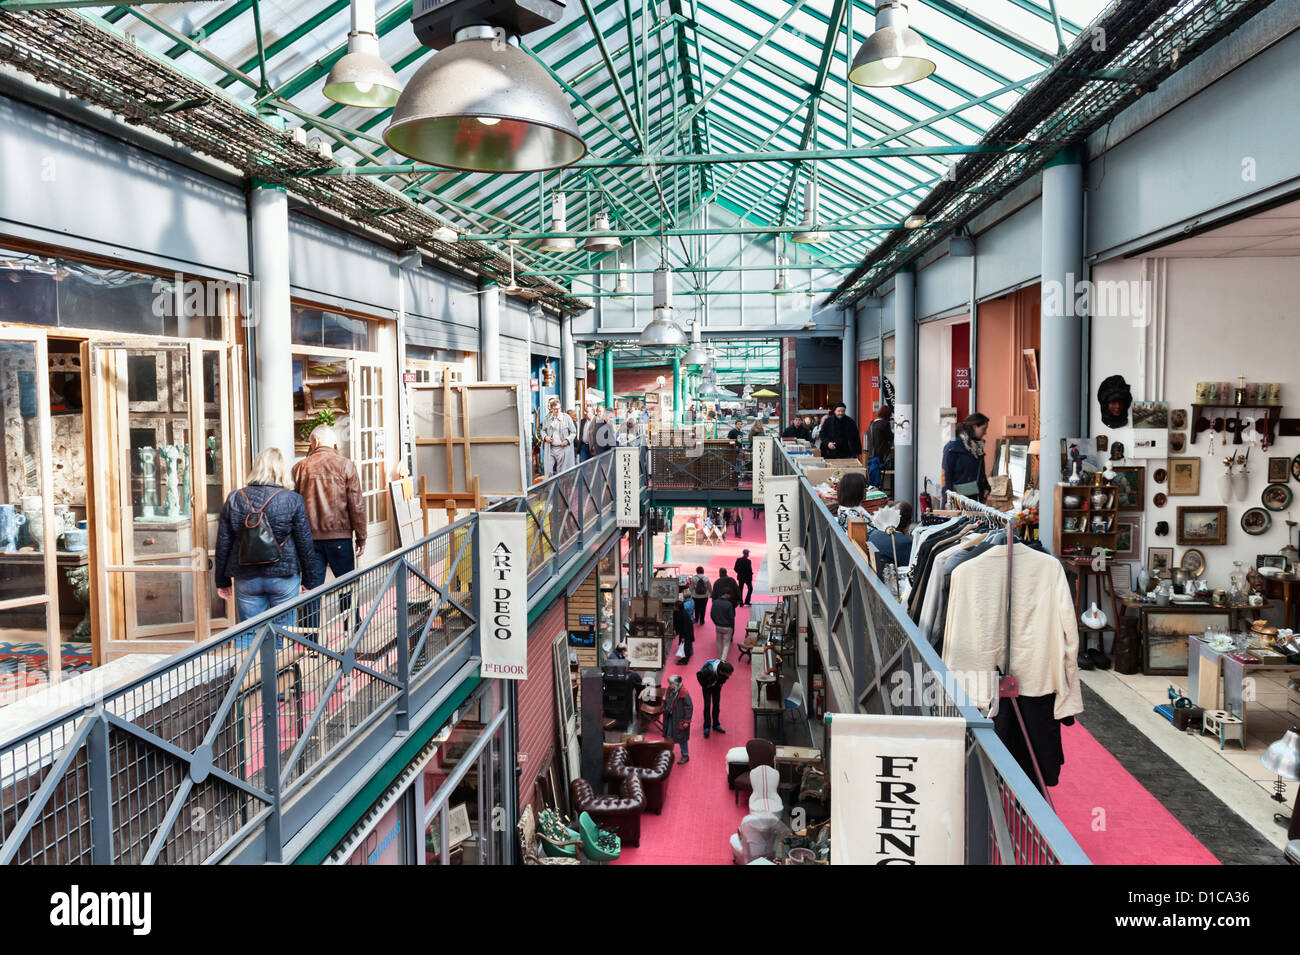 Saint ouen flea market in paris hi-res stock photography and images - Alamy